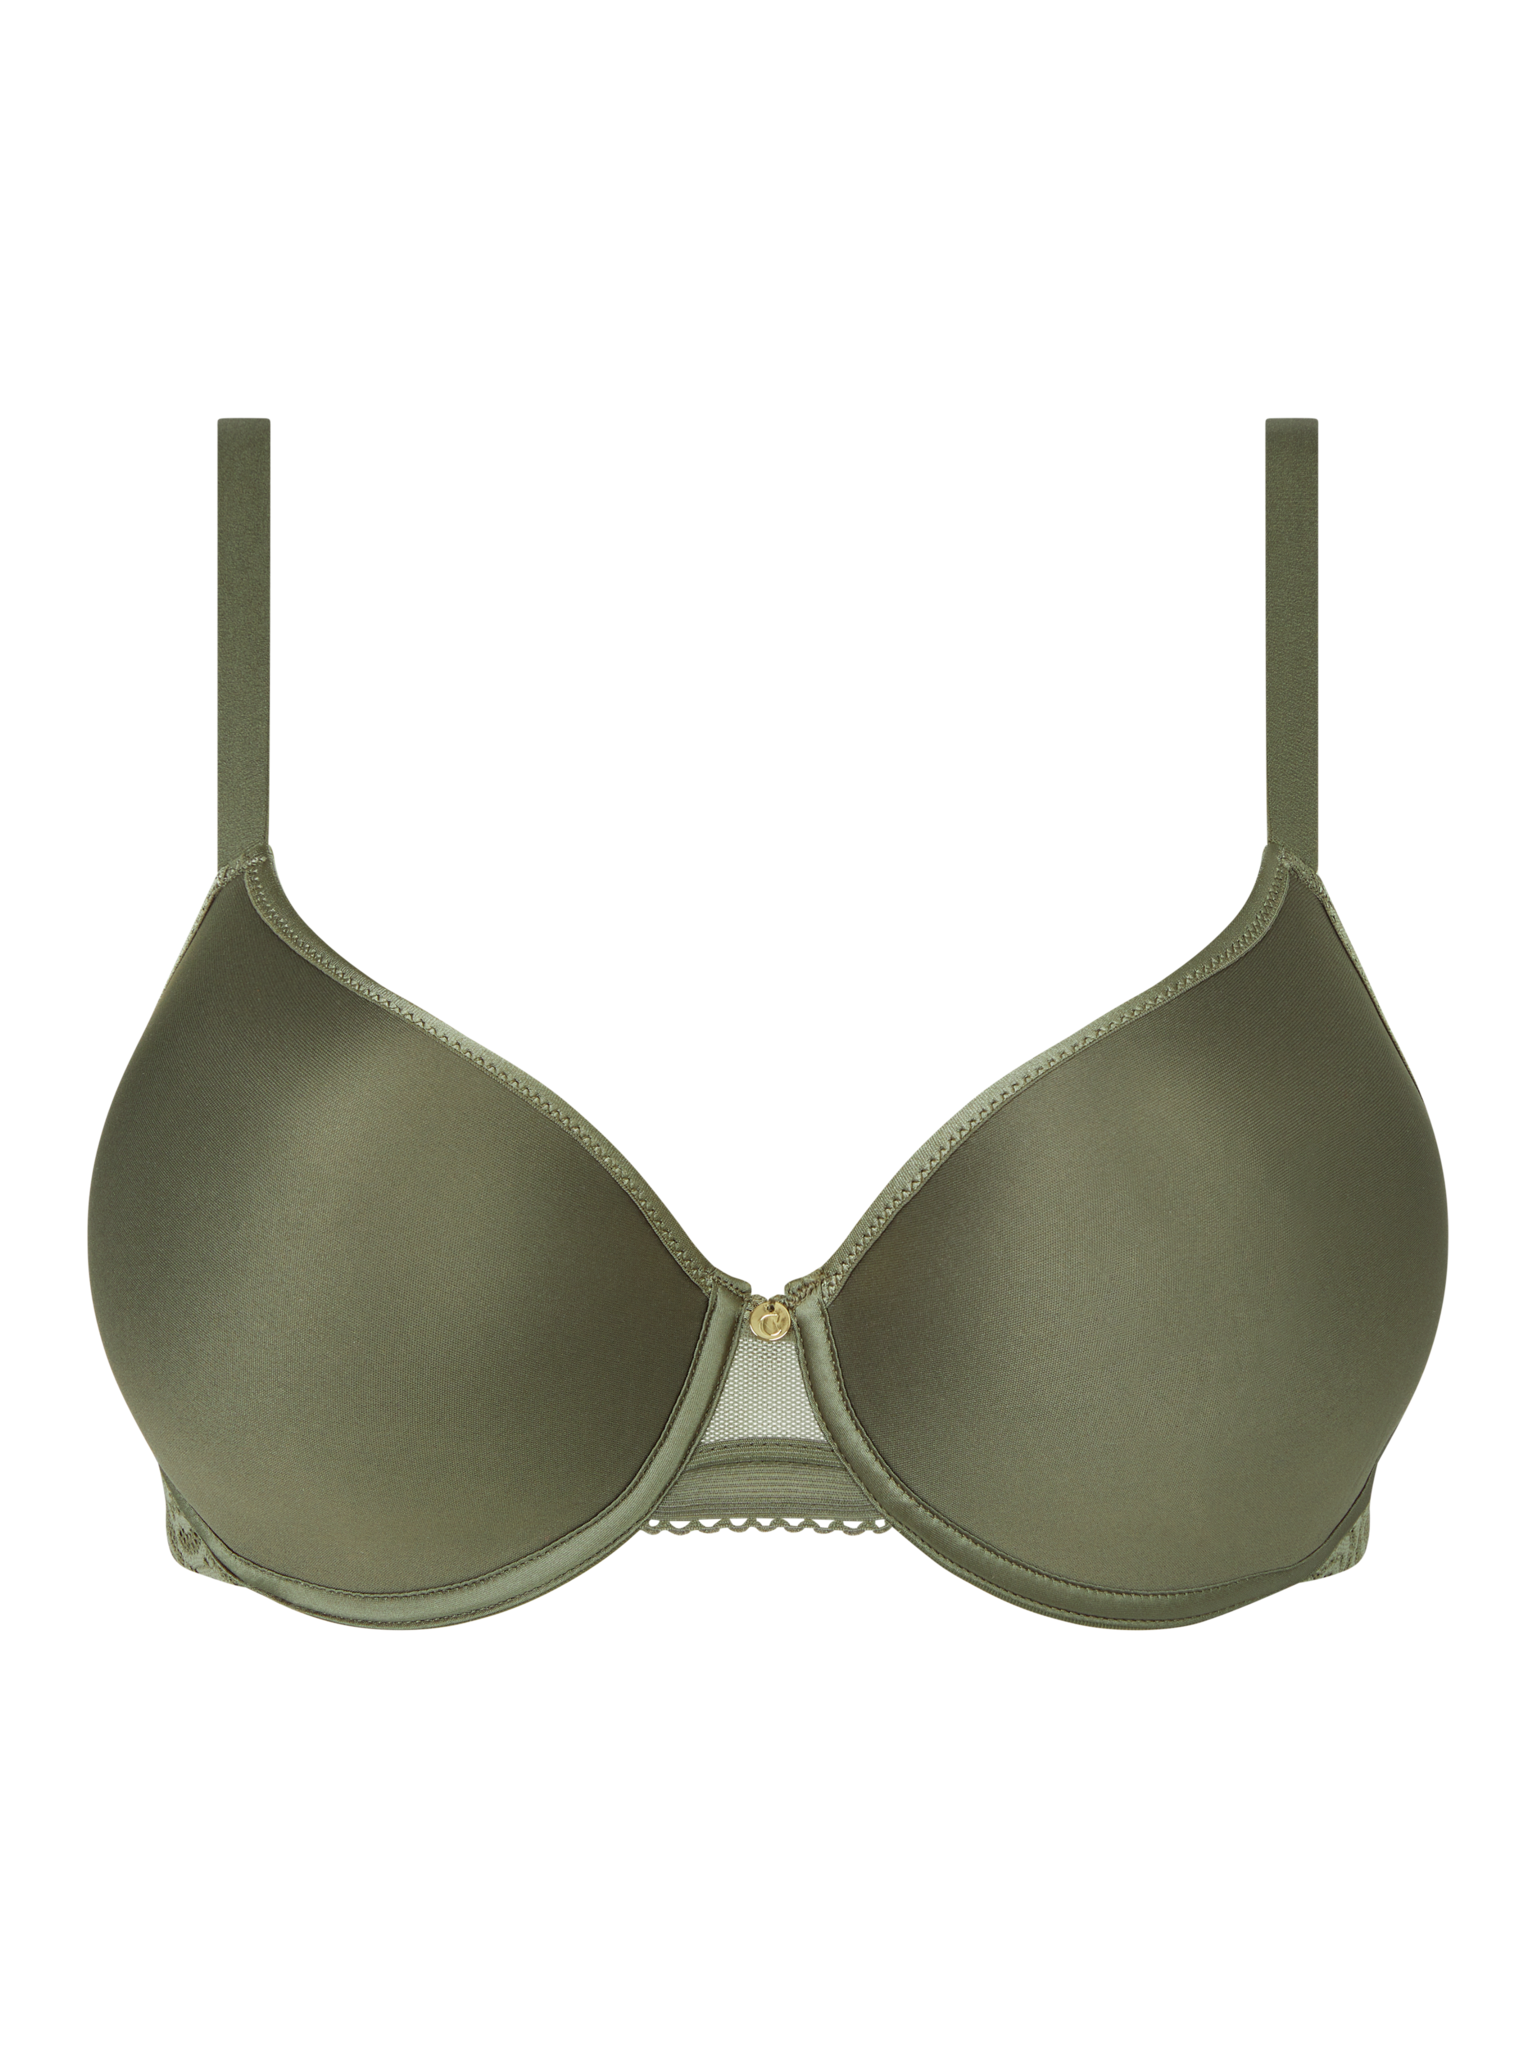 Minimiser Bra Size 30F - Buy Online, Underwire bras